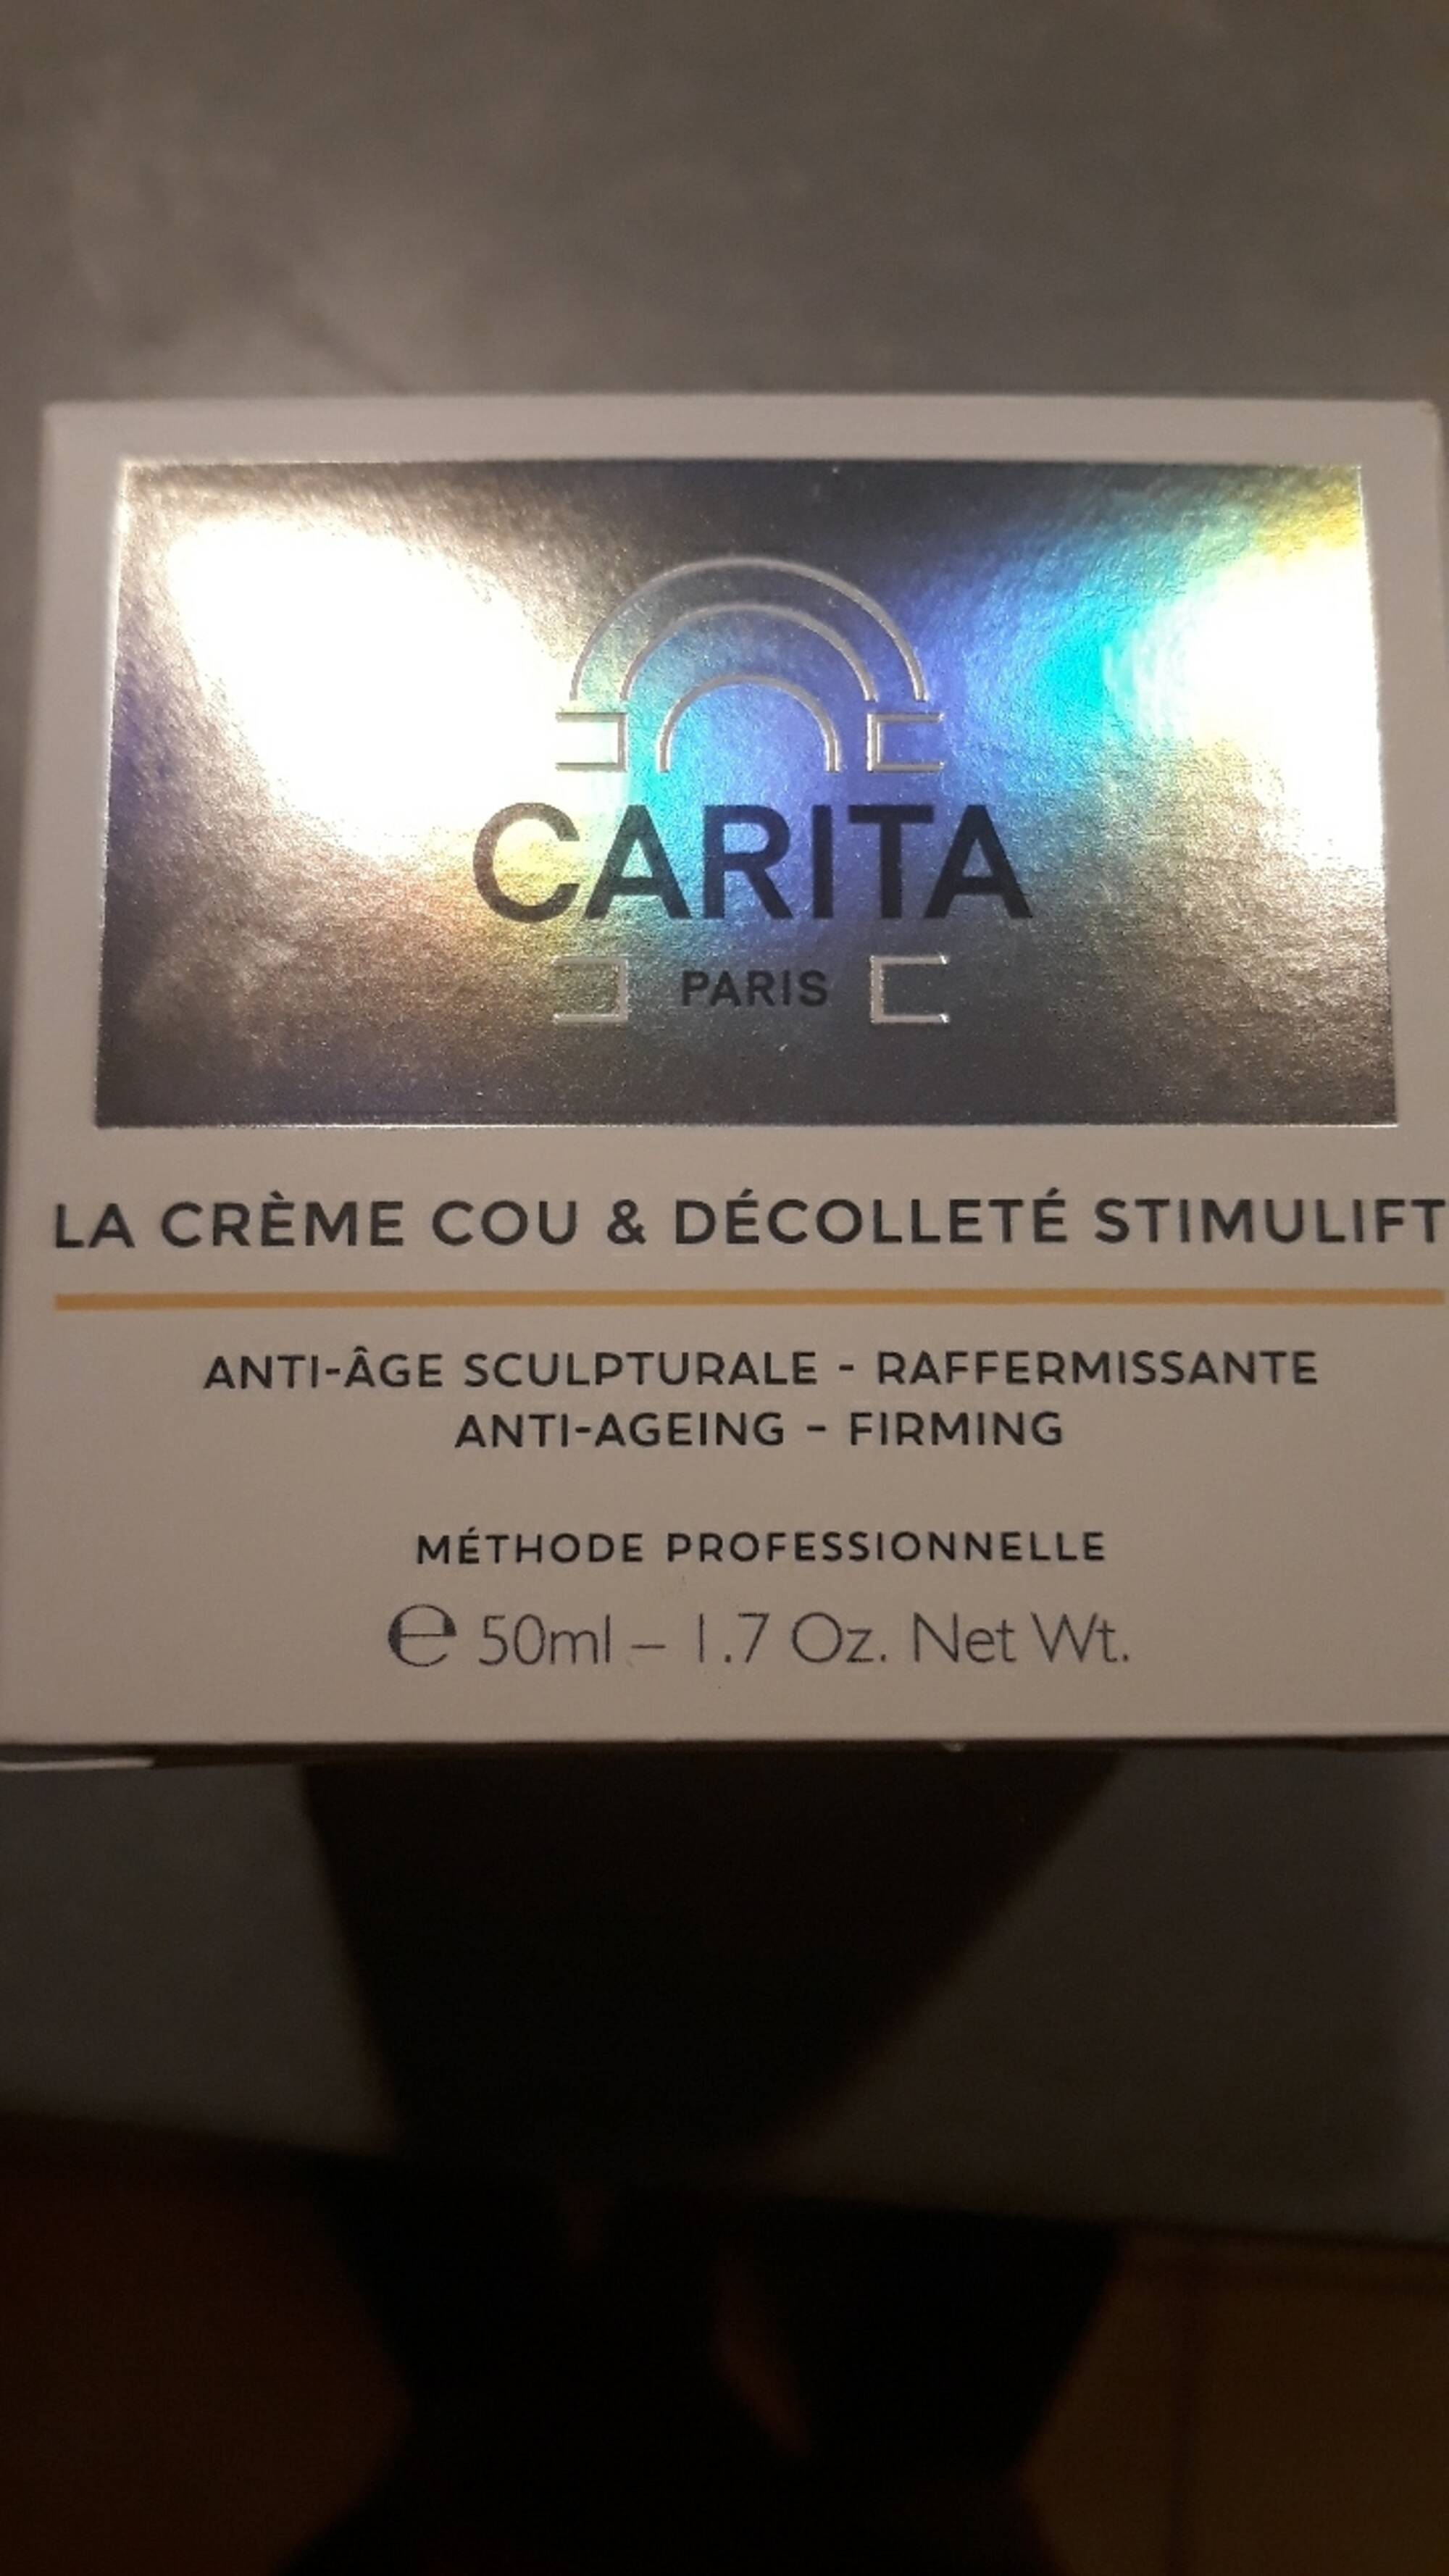 CARITA - La crème cou & décolleté stimulift